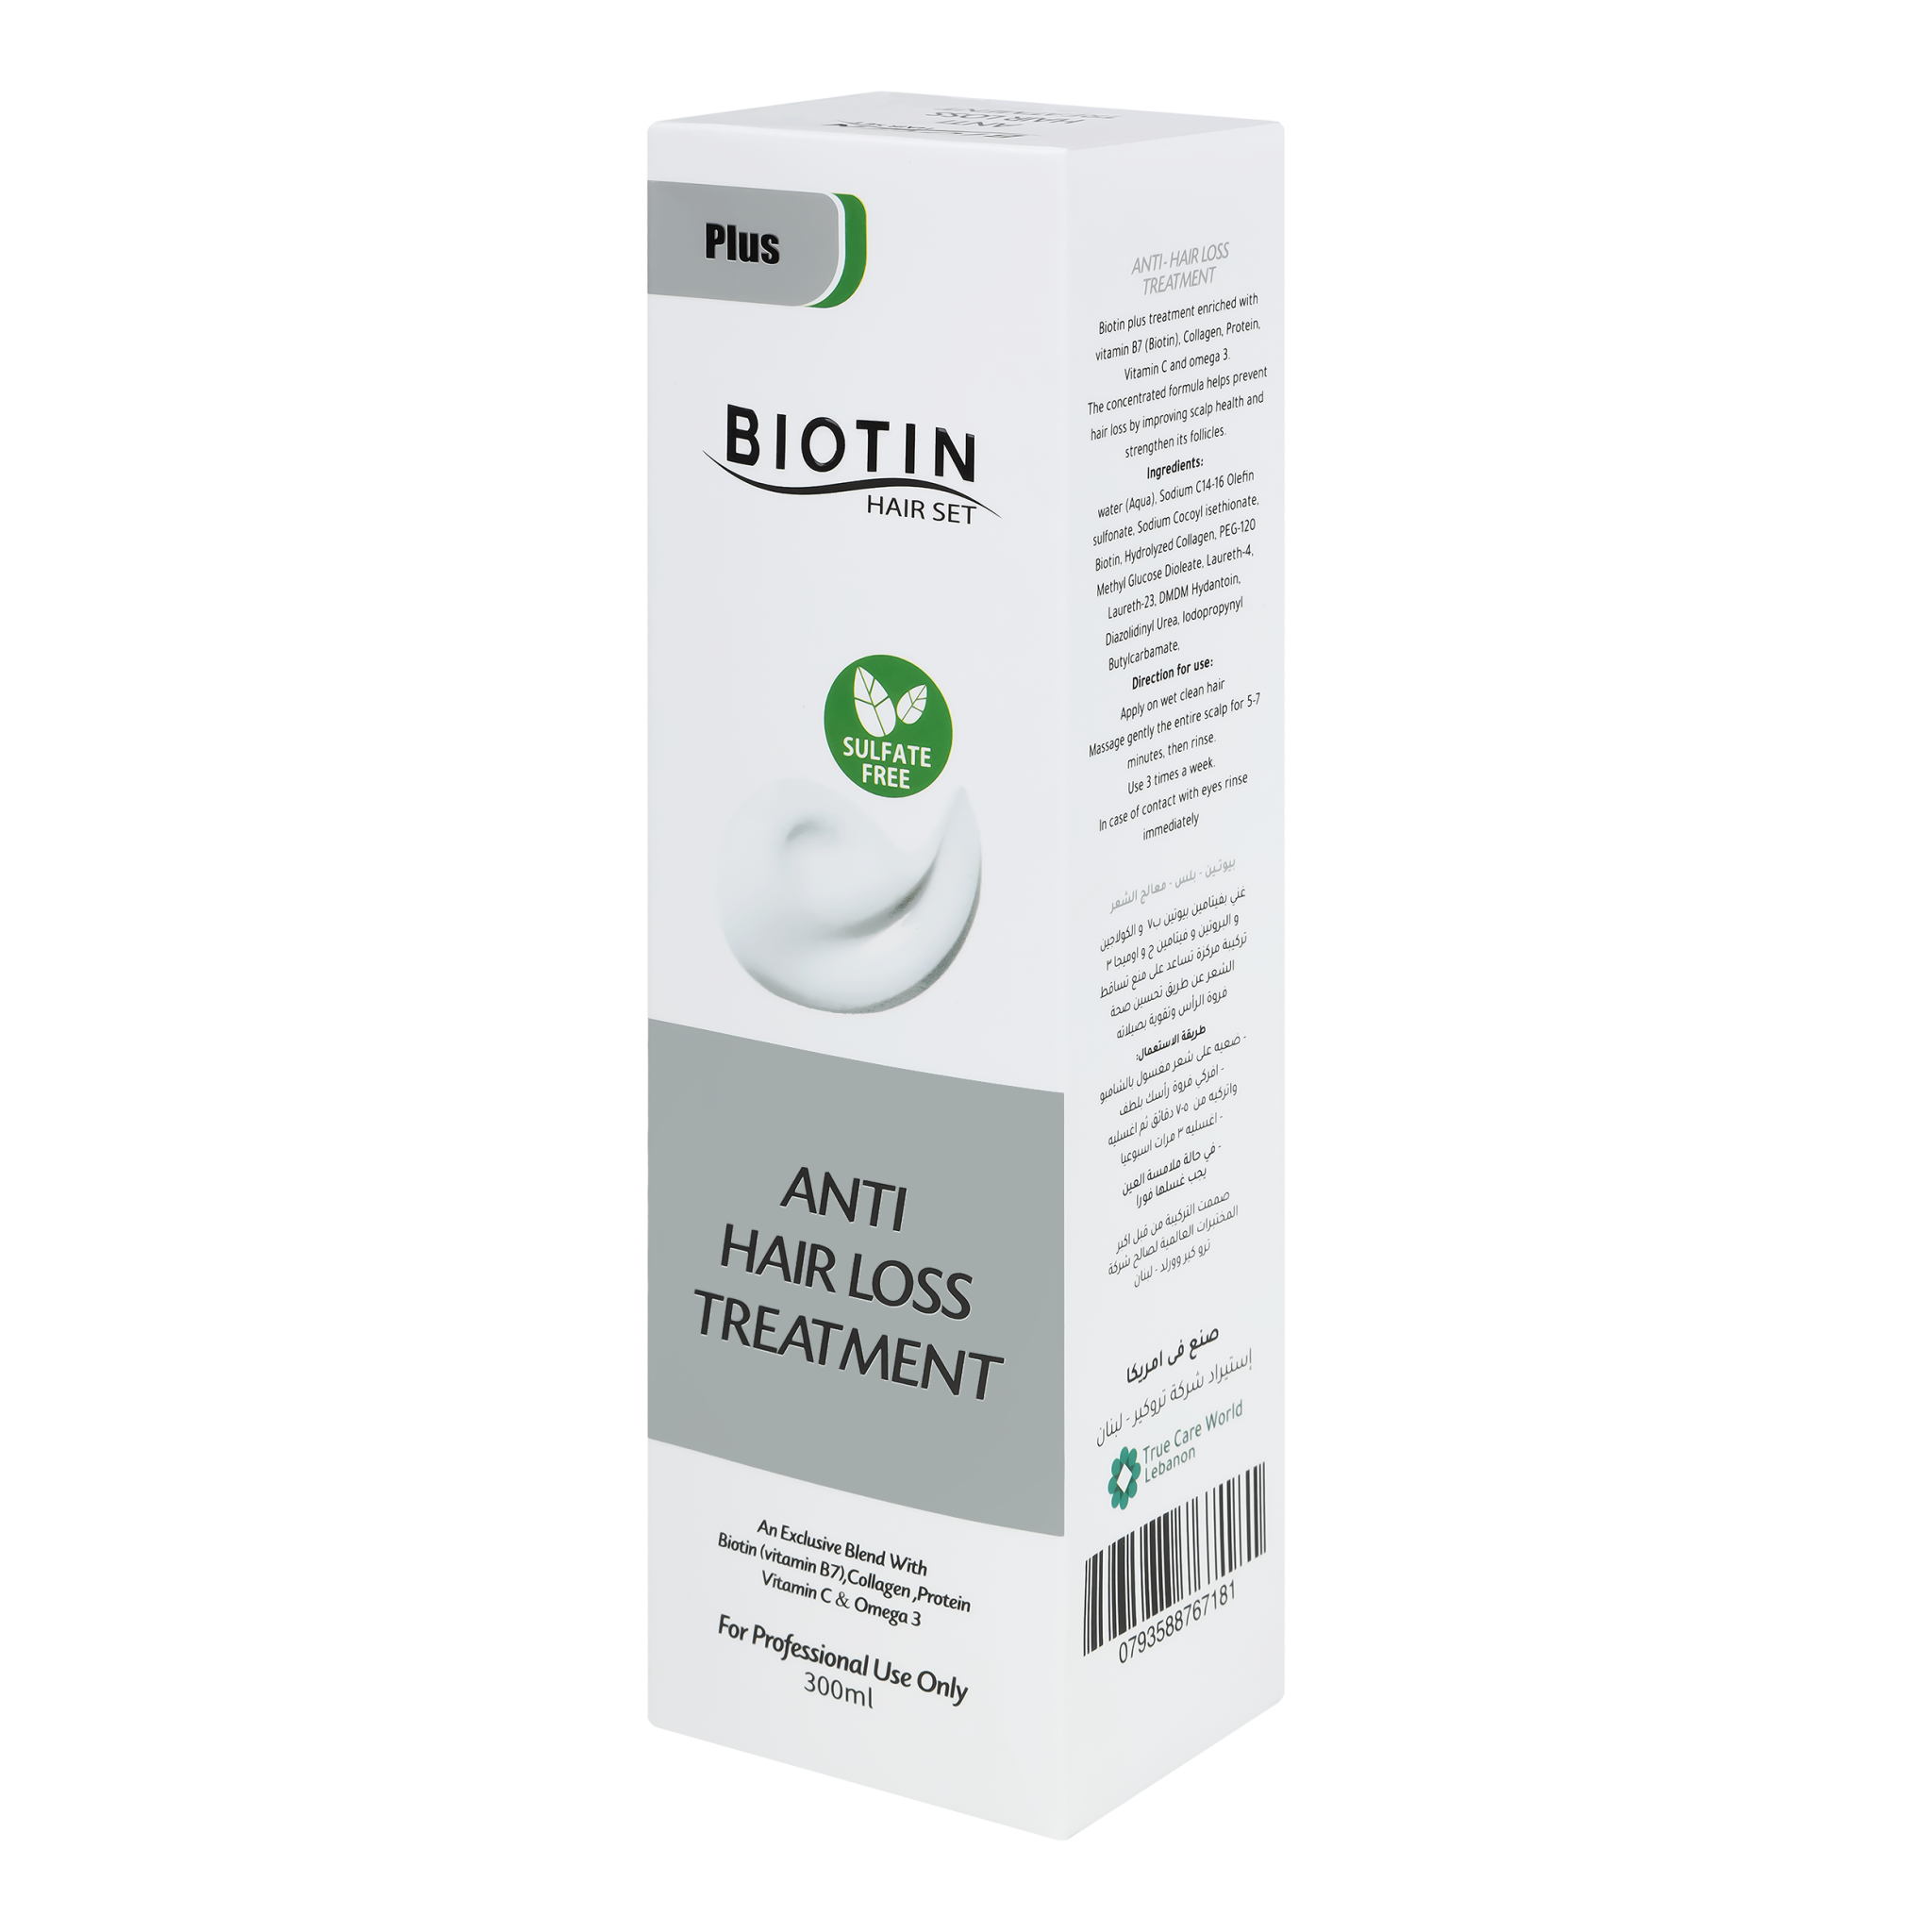 True Care World | Biotin Hair Set, Plus, Anti Hair Loss Treatment, 300ml